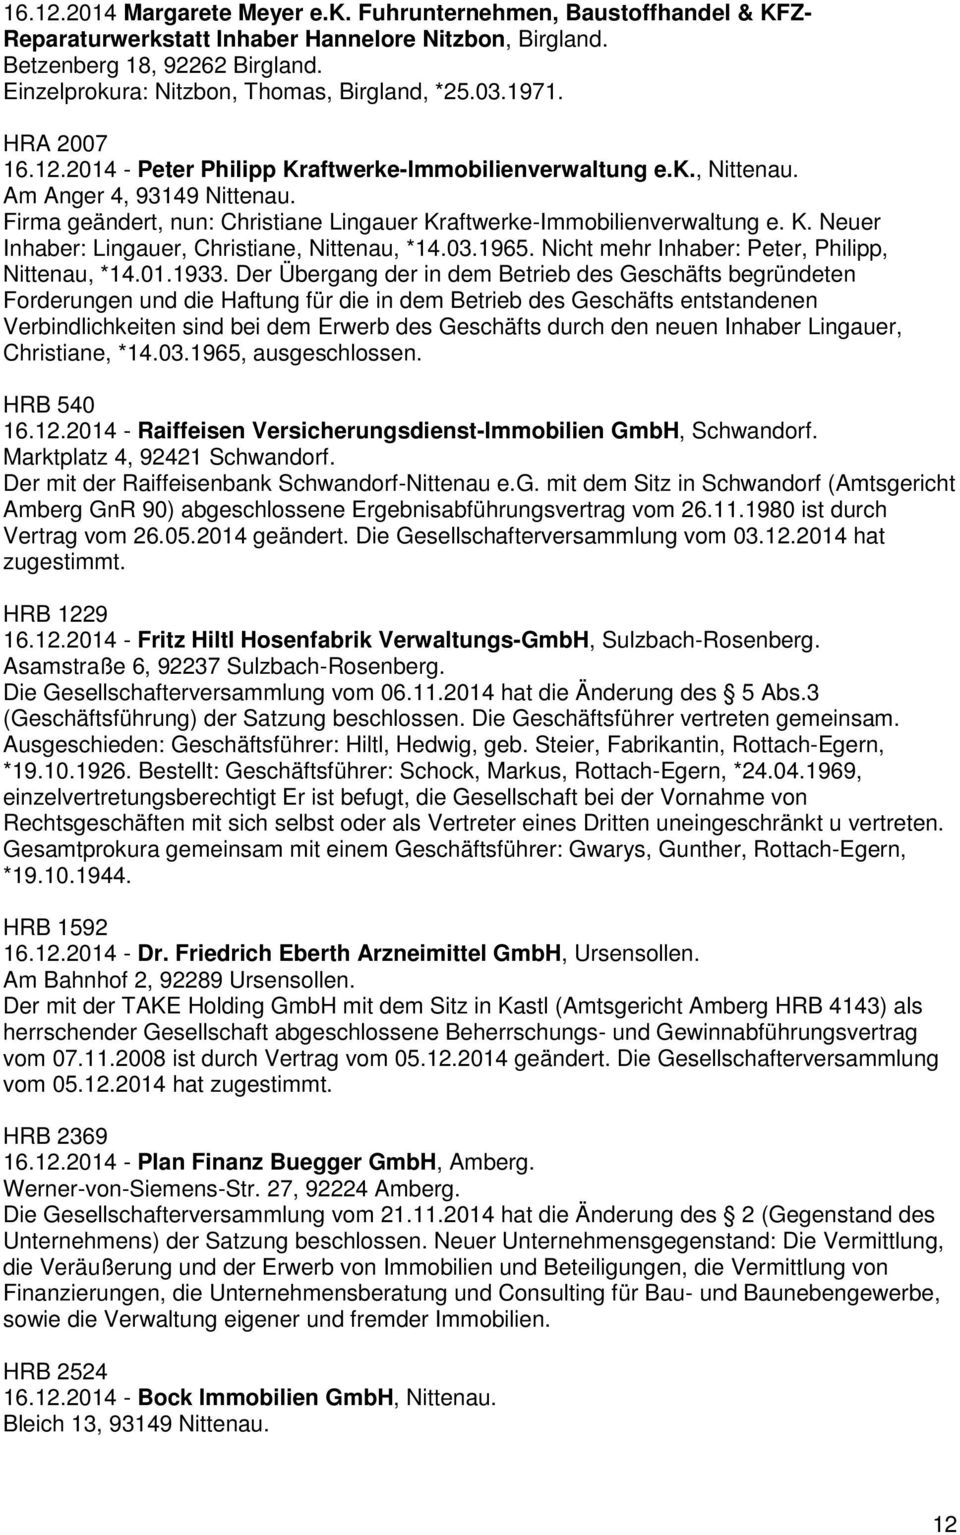 Firma geändert, nun: Christiane Lingauer Kraftwerke-Immobilienverwaltung e. K. Neuer Inhaber: Lingauer, Christiane, Nittenau, *14.03.1965. Nicht mehr Inhaber: Peter, Philipp, Nittenau, *14.01.1933.